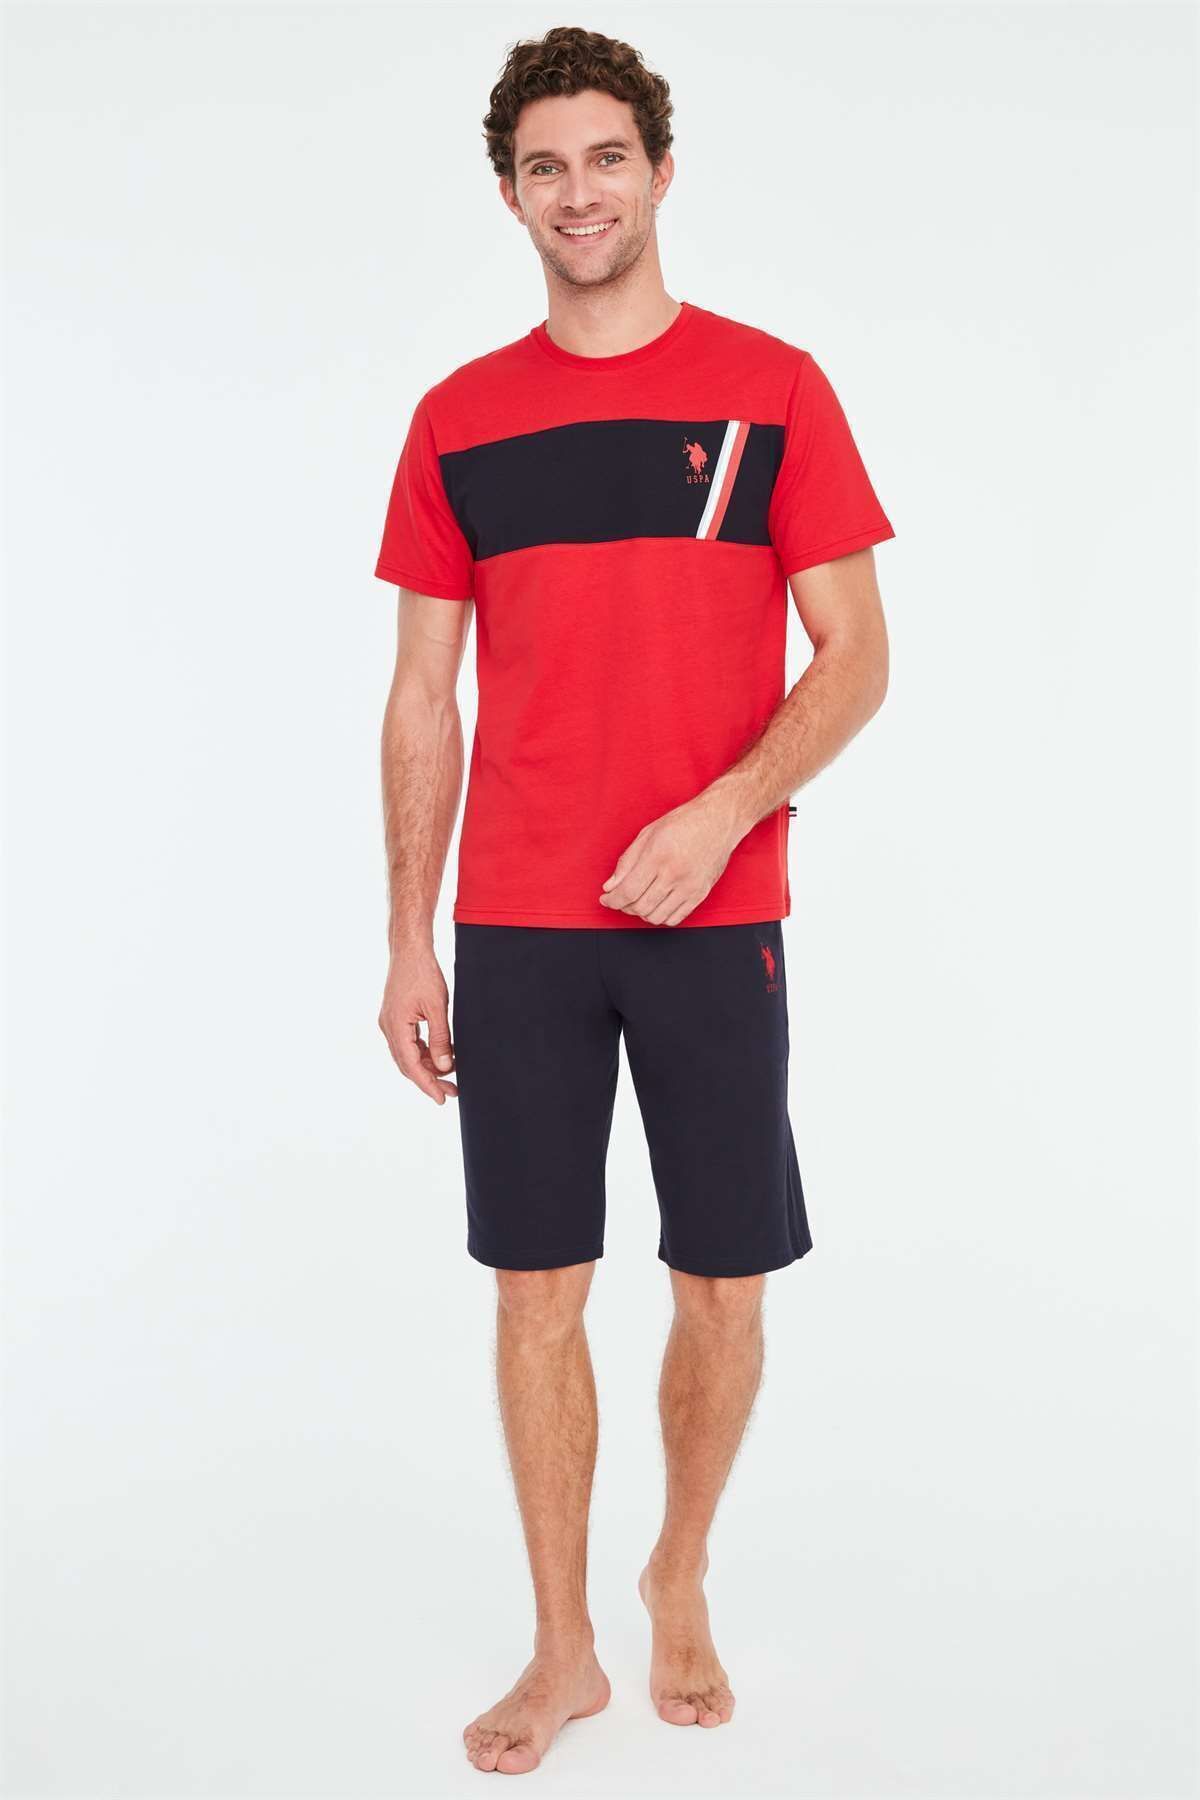 U.S. Polo Assn. - Erkek Kırmızı T-shirt Şort Takımı